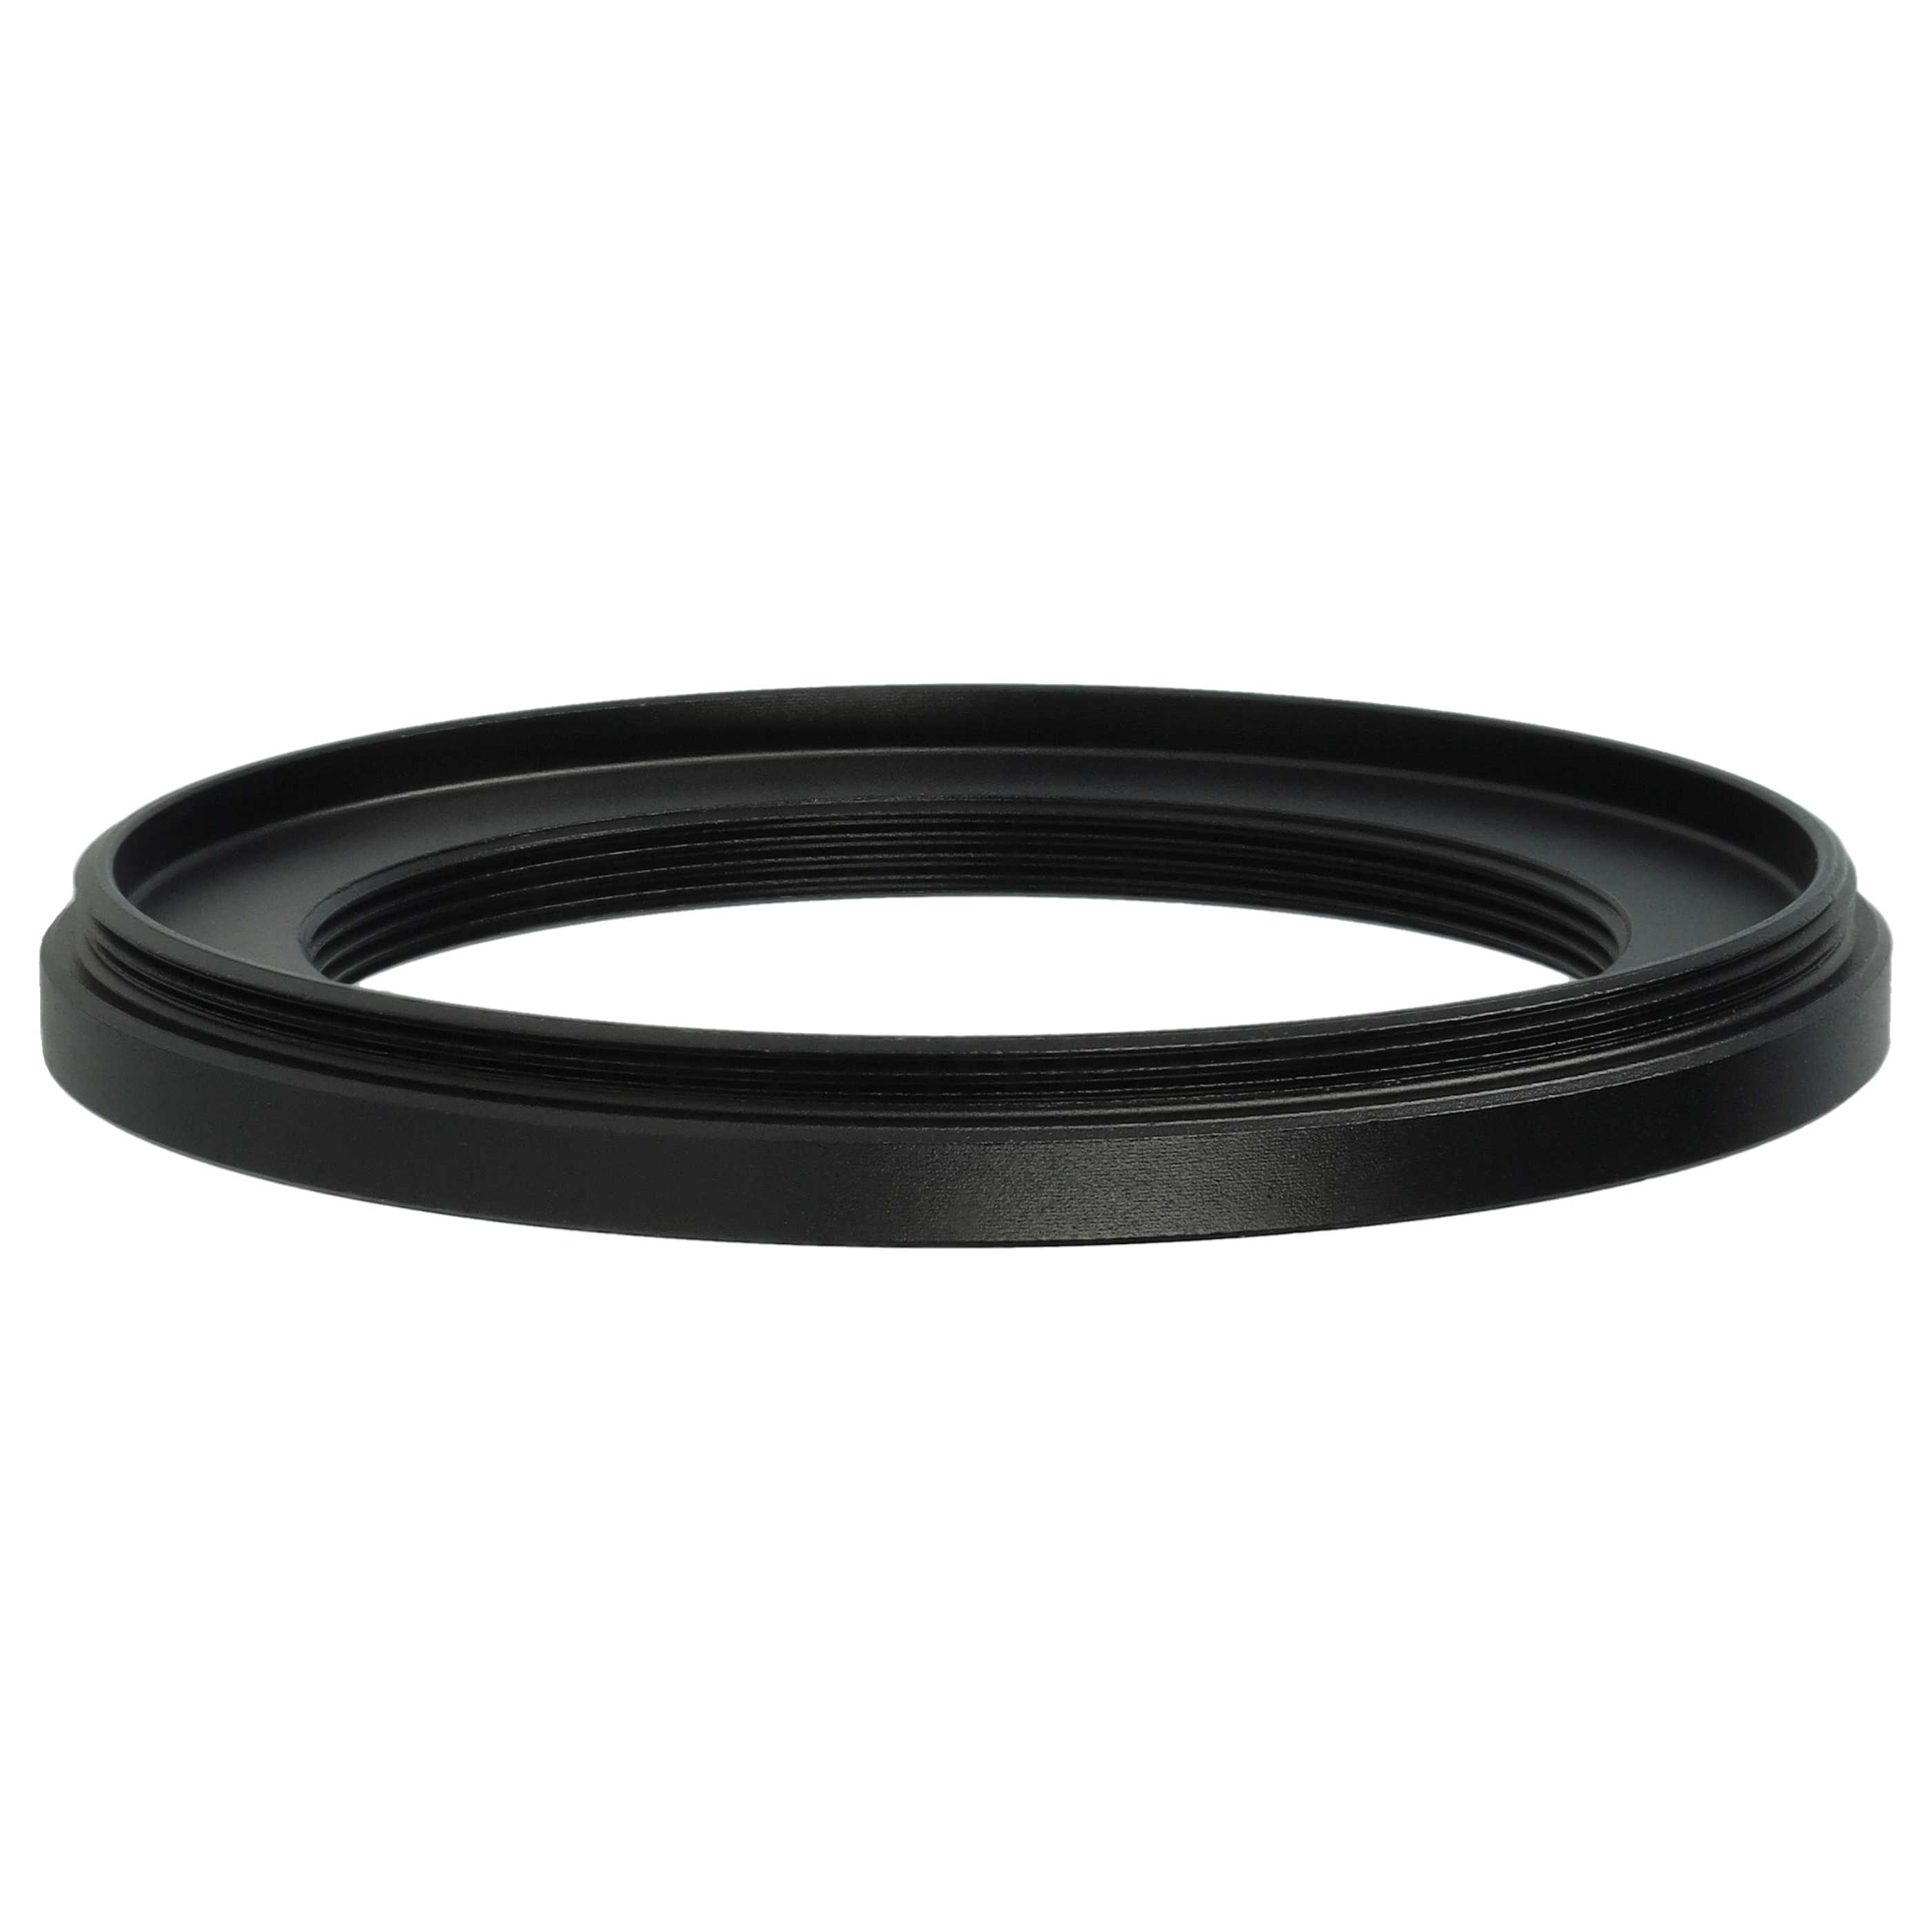 Anello adattatore step-down da 58 mm a 43 mm per obiettivo fotocamera - Adattatore filtro, metallo, nero